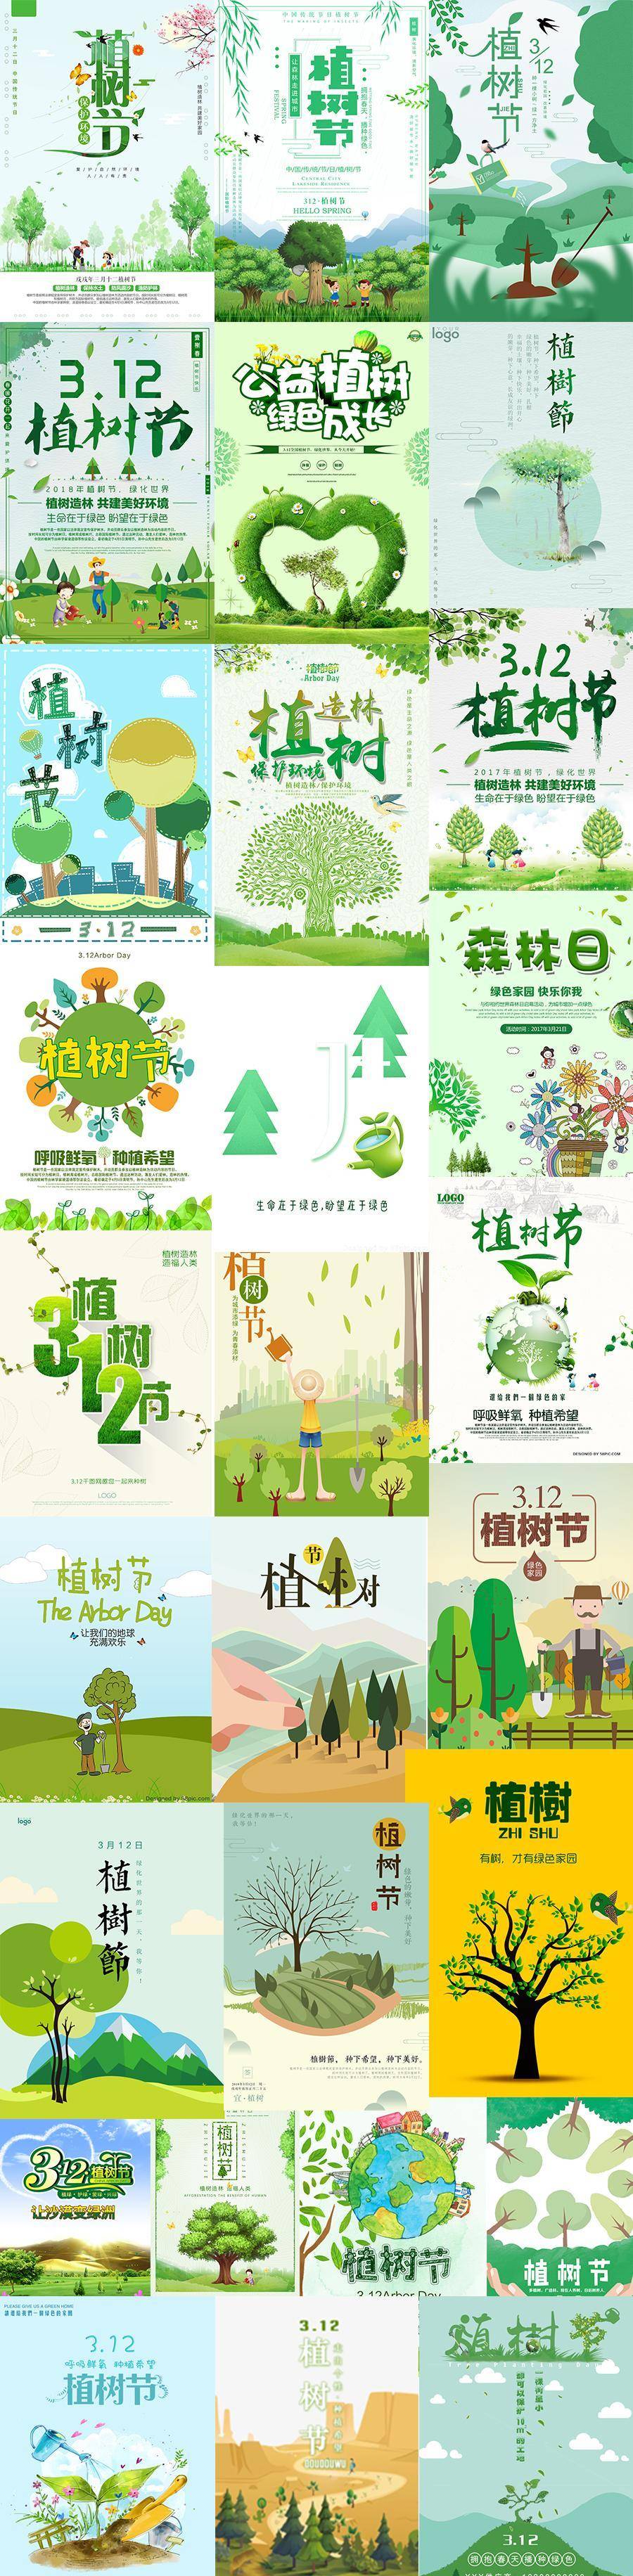 30款2019植树节海报模板宣传展板公益环保绿色背景创意psd设计素材图